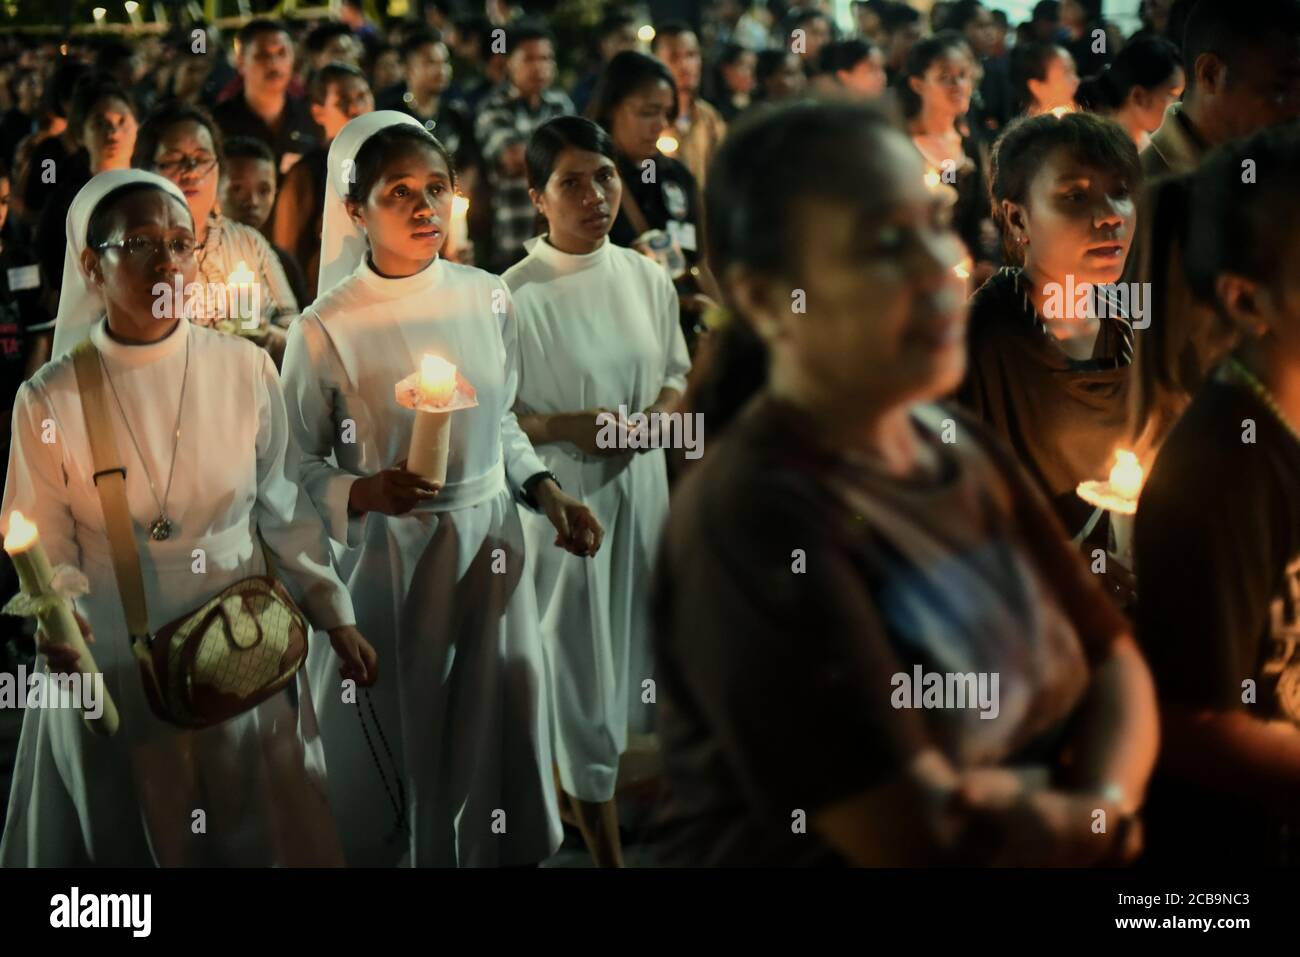 Tausende von katholischen Gläubigen und Pilgern nahmen an einem vierstündigen andachtsmarsch zum Gedenken an den Karfreitag in Larantuka, Indonesien, Teil. Stockfoto